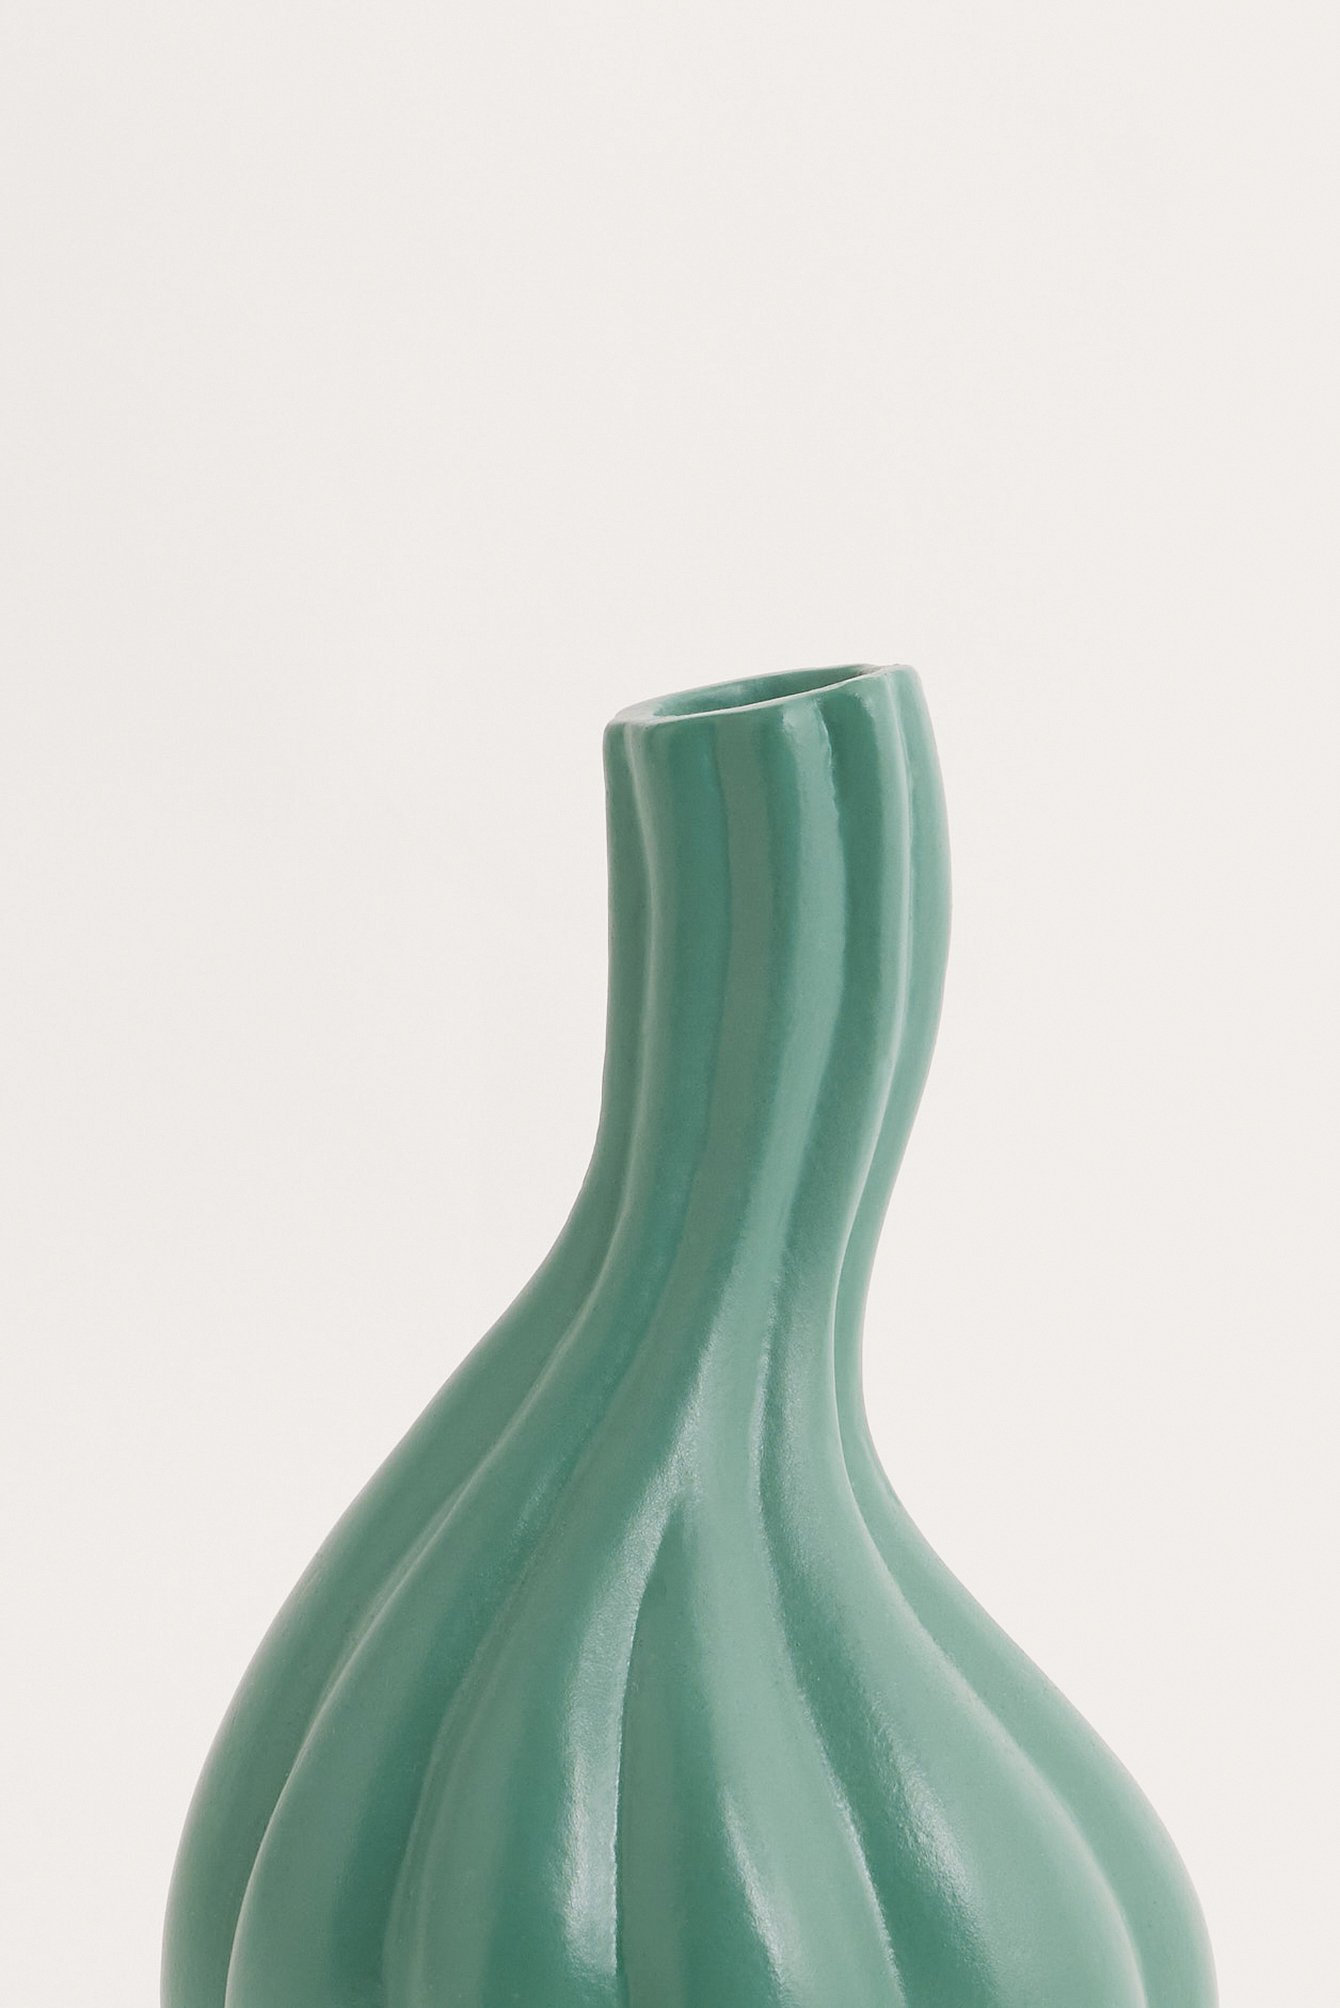 Green Eco Vase Klein